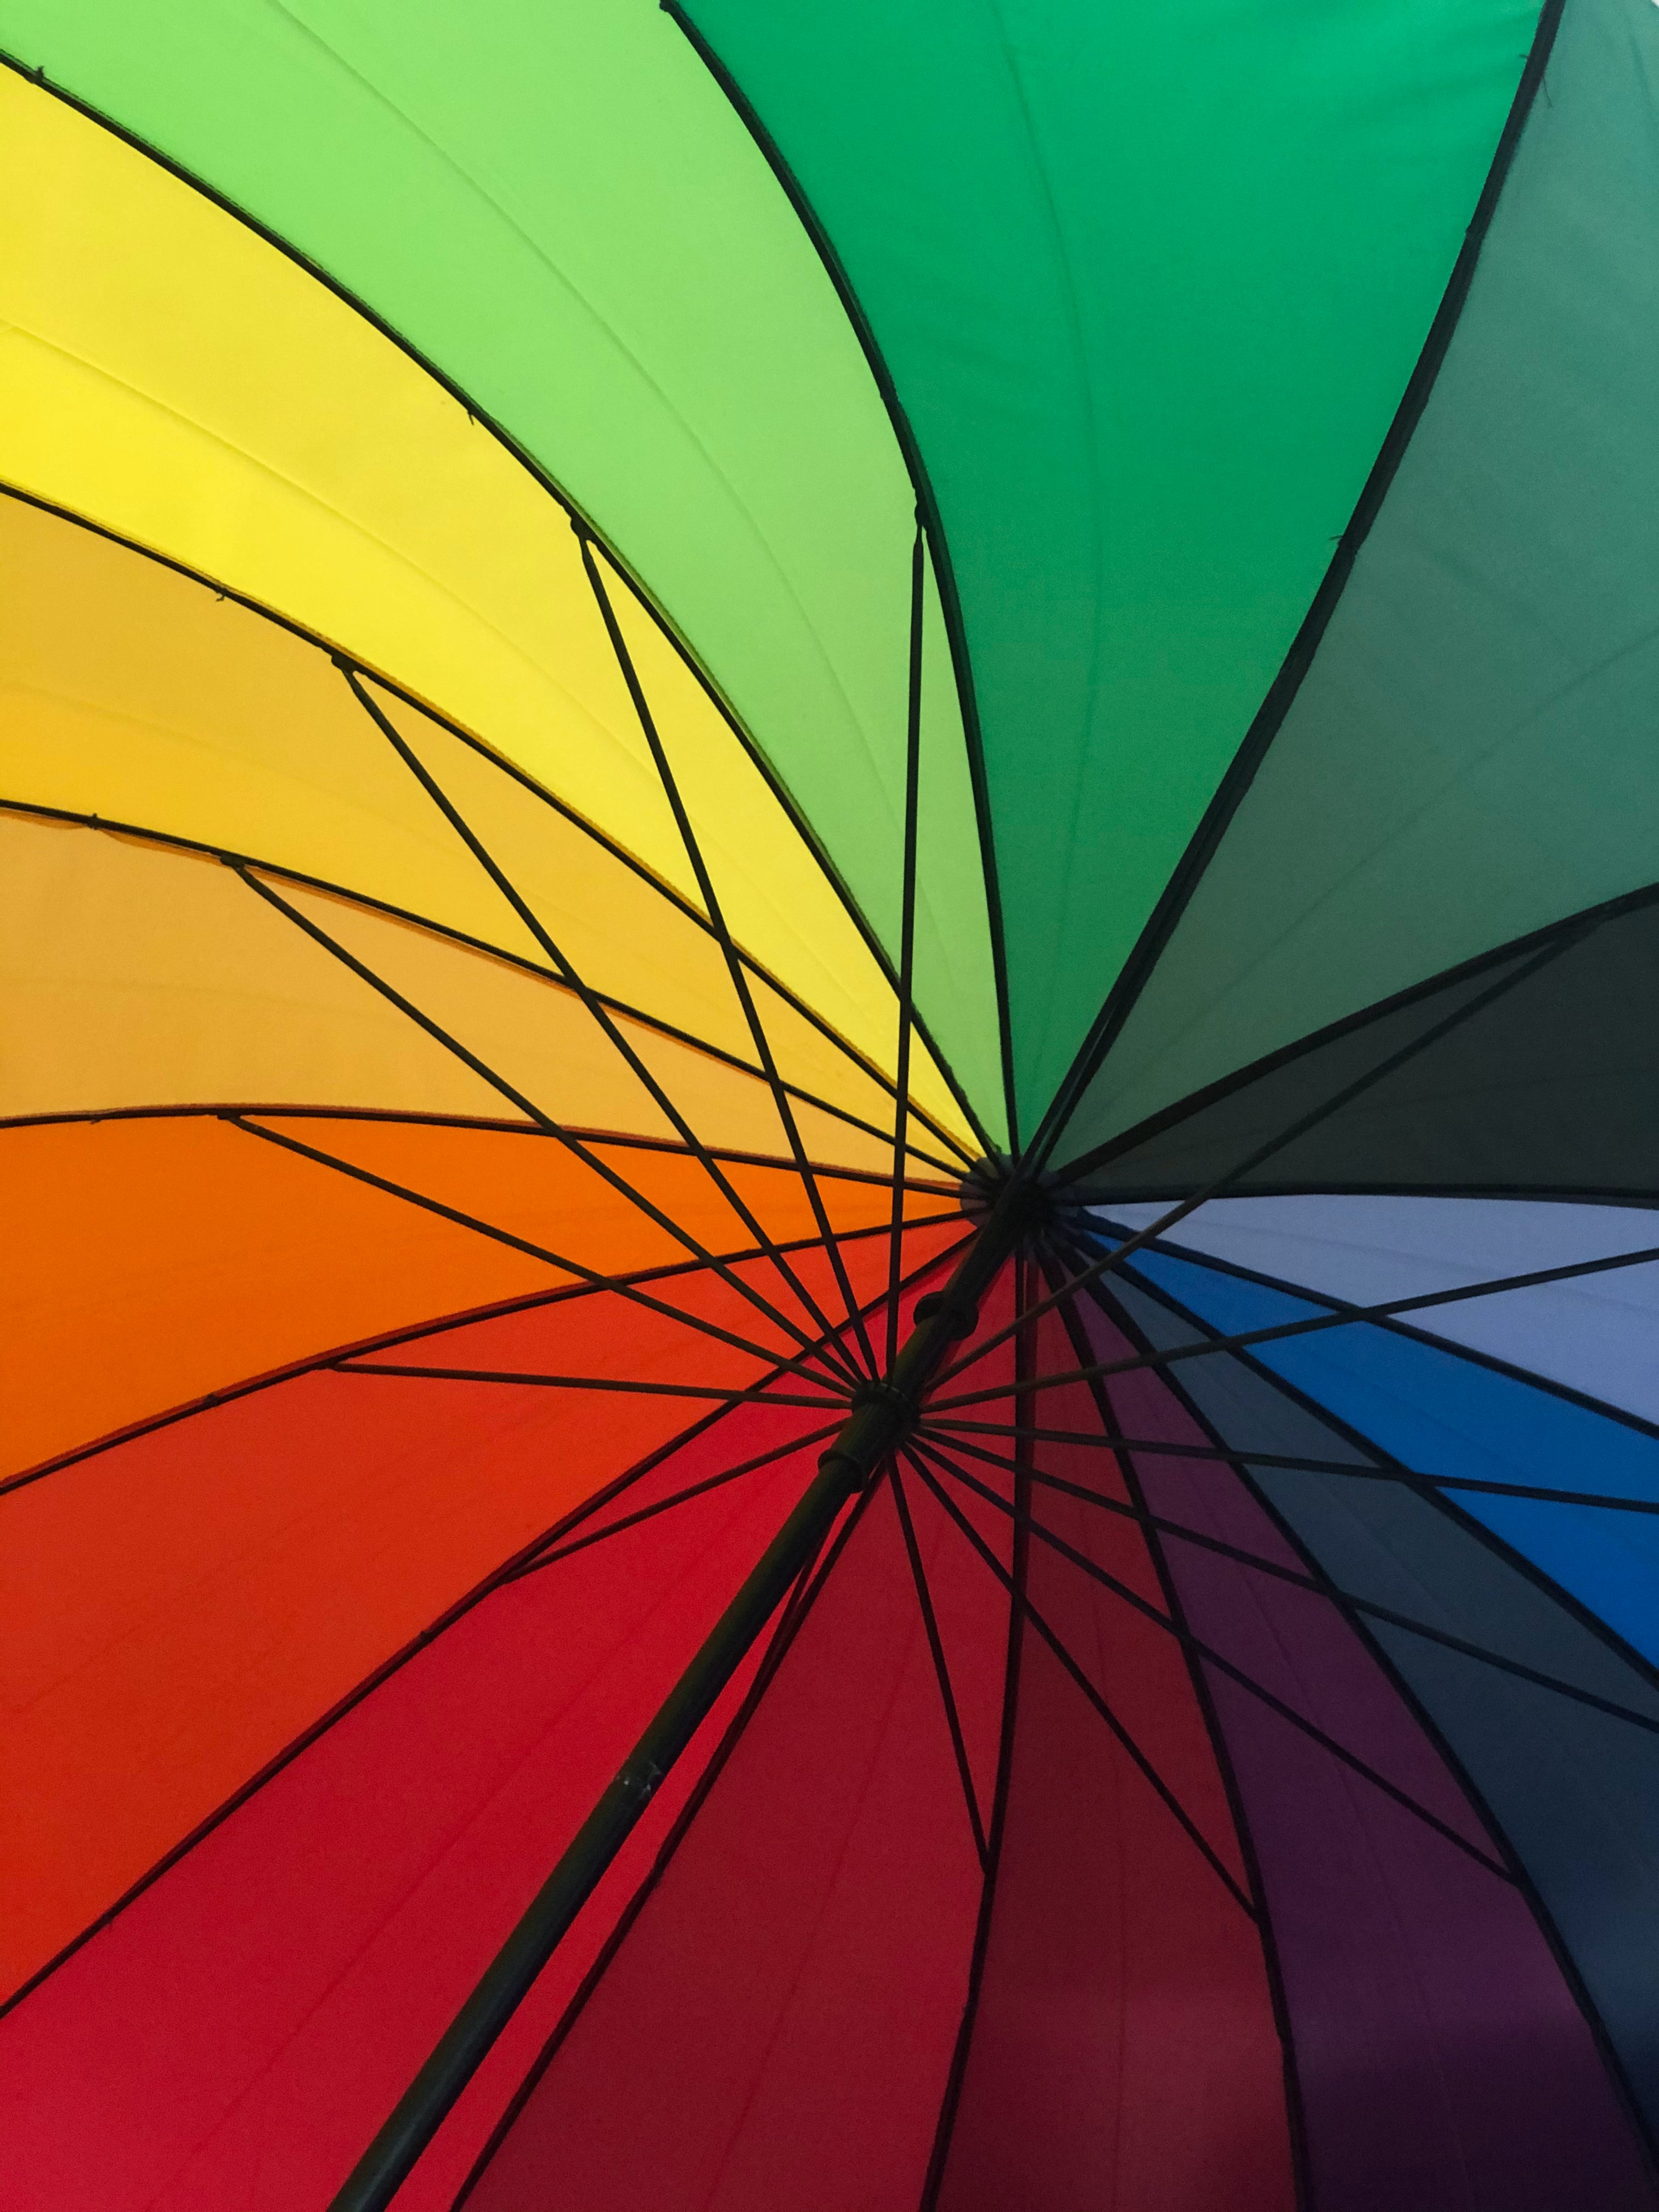 Download mobile wallpaper Miscellaneous, Miscellanea, Motley, Multicolored, Umbrella, Rainbow for free.